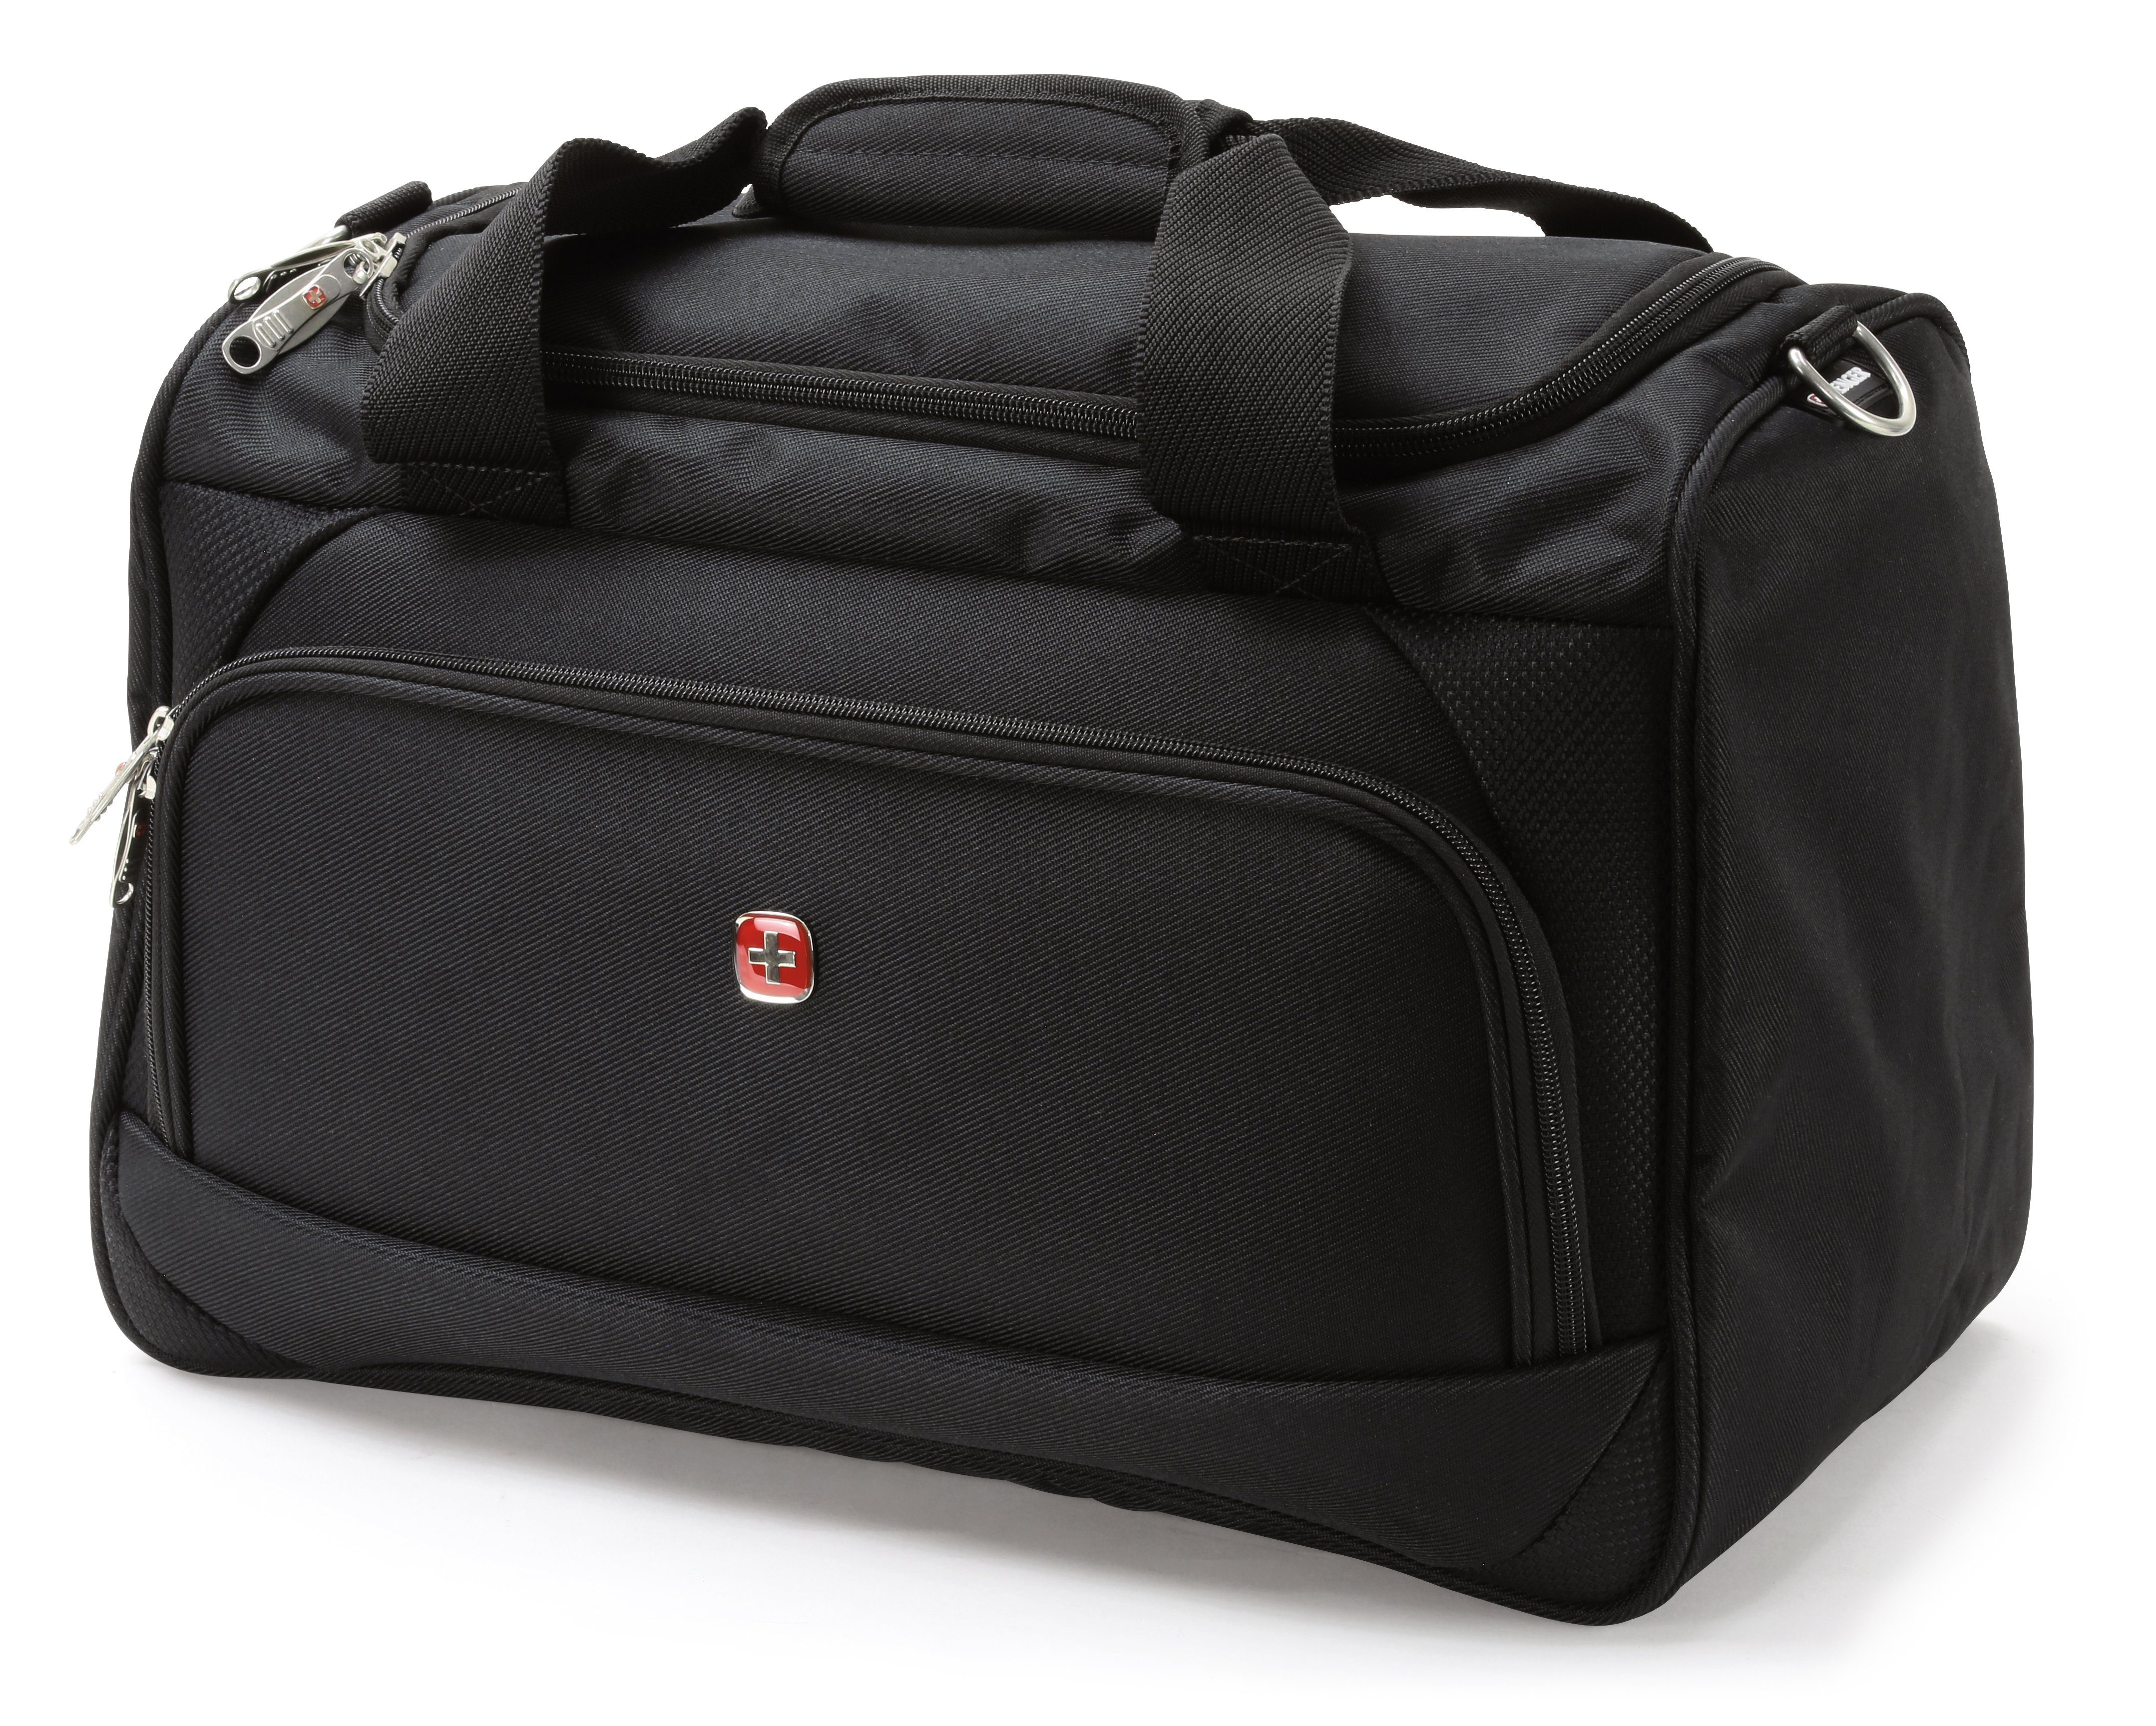 Wenger Reisetasche Luggage Duffle, 46cm x 26cm x 32cm, 40l Volumen, für  Damen und Herren, schwarz